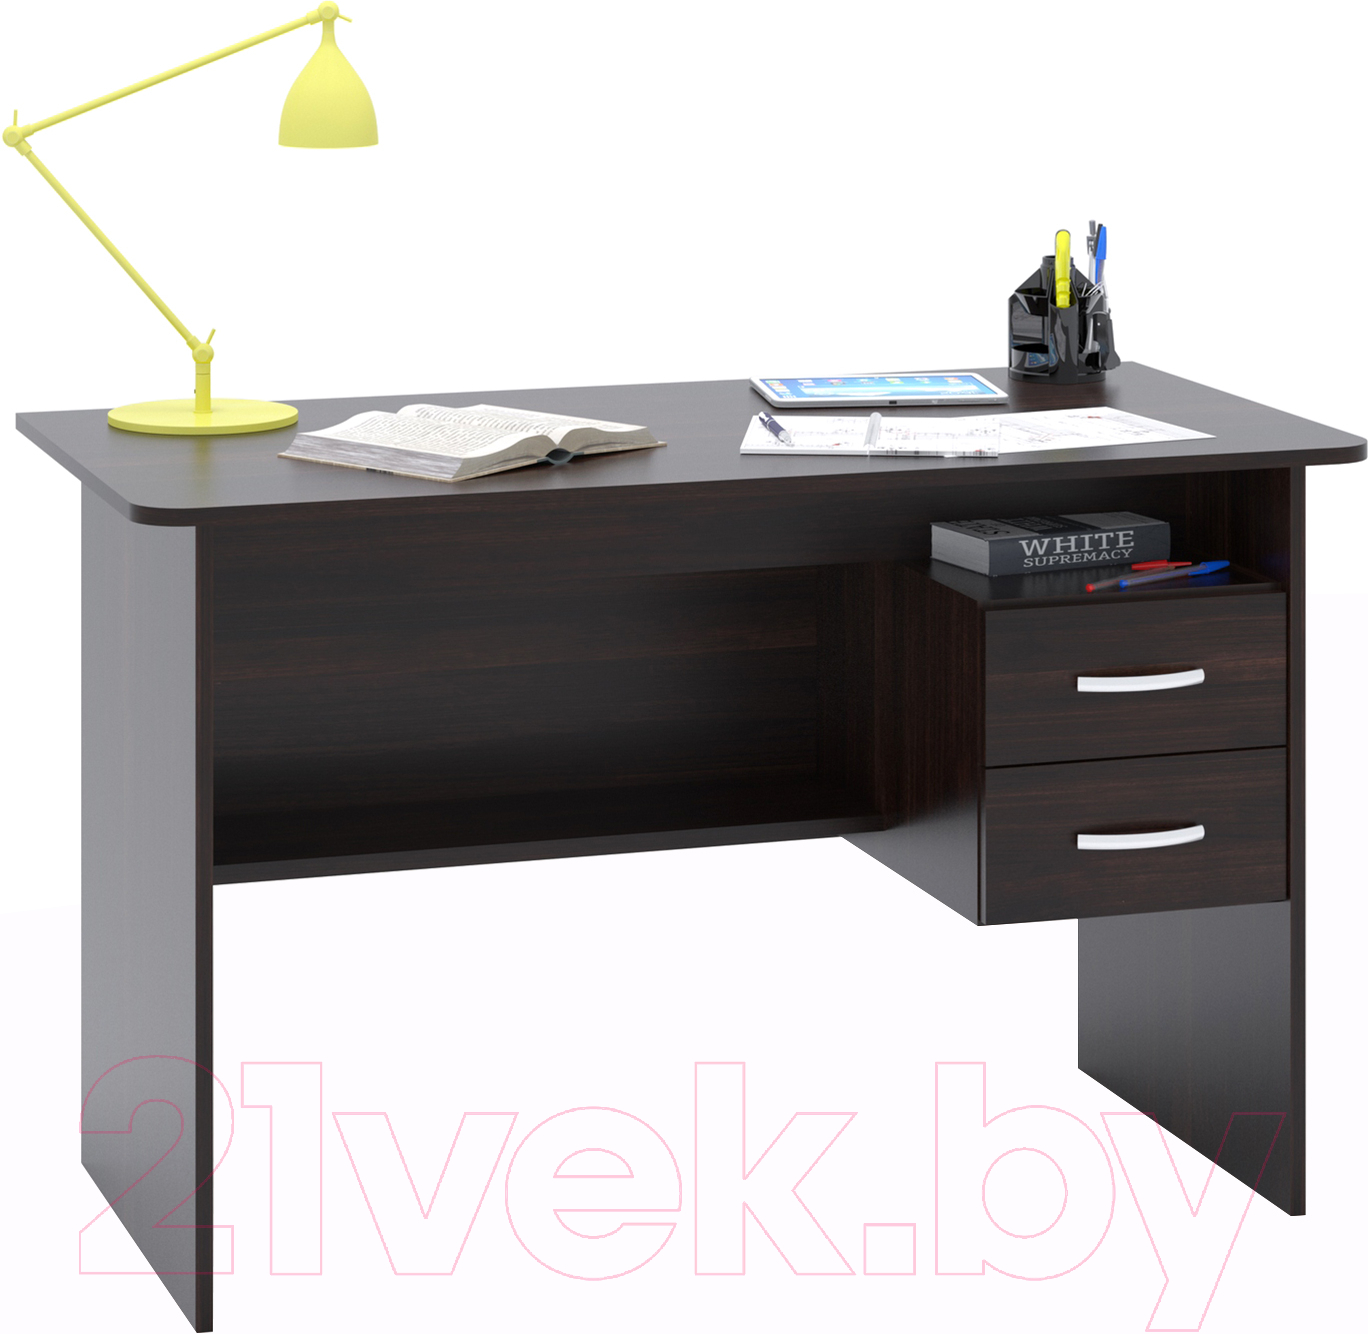 Письменный стол Сокол-Мебель СПм-07.1 (венге)